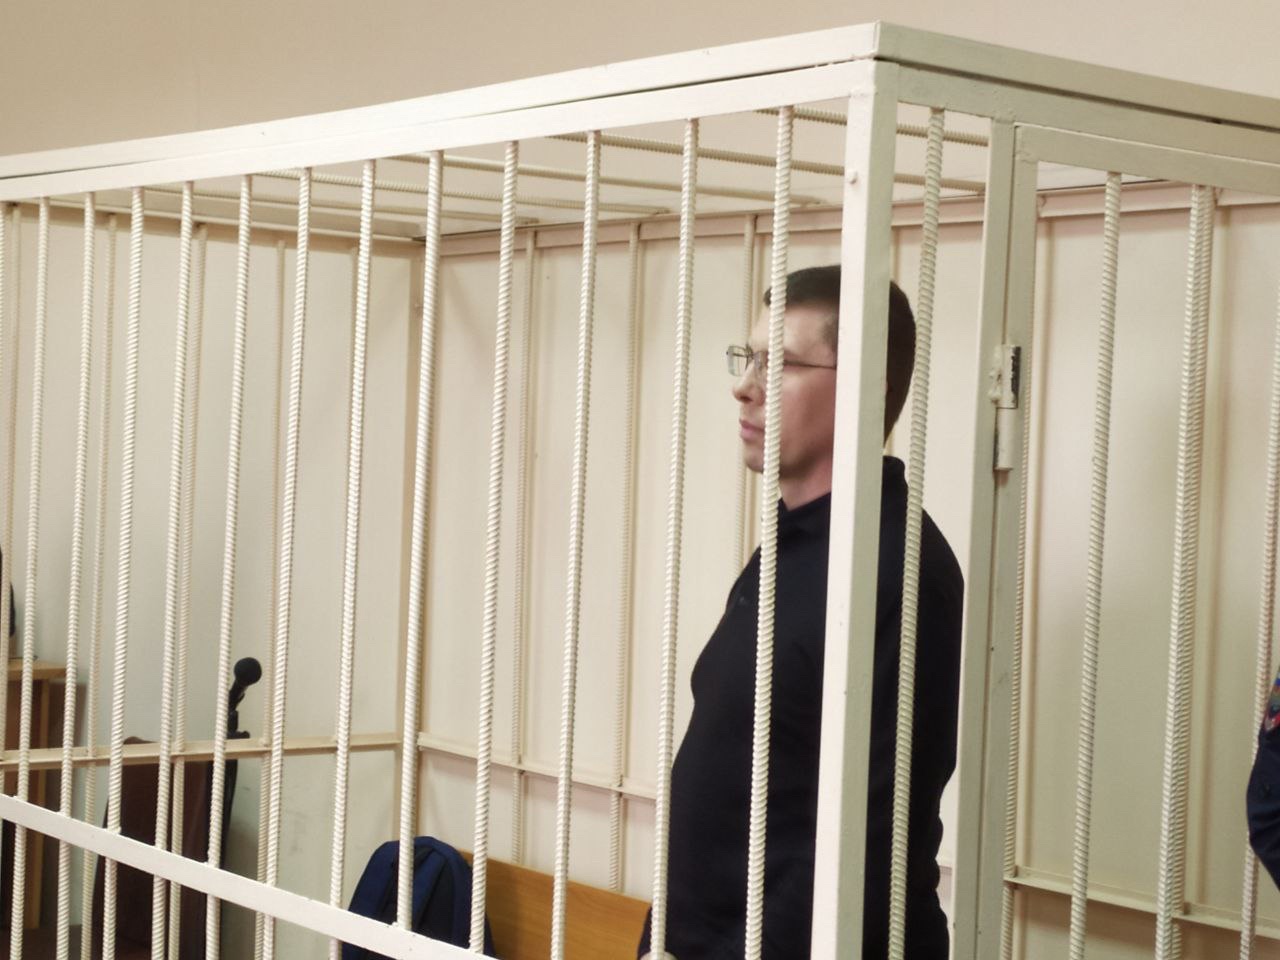 Пойман на взятке: в суде начался процесс над бывшим замминистра Челябинской области